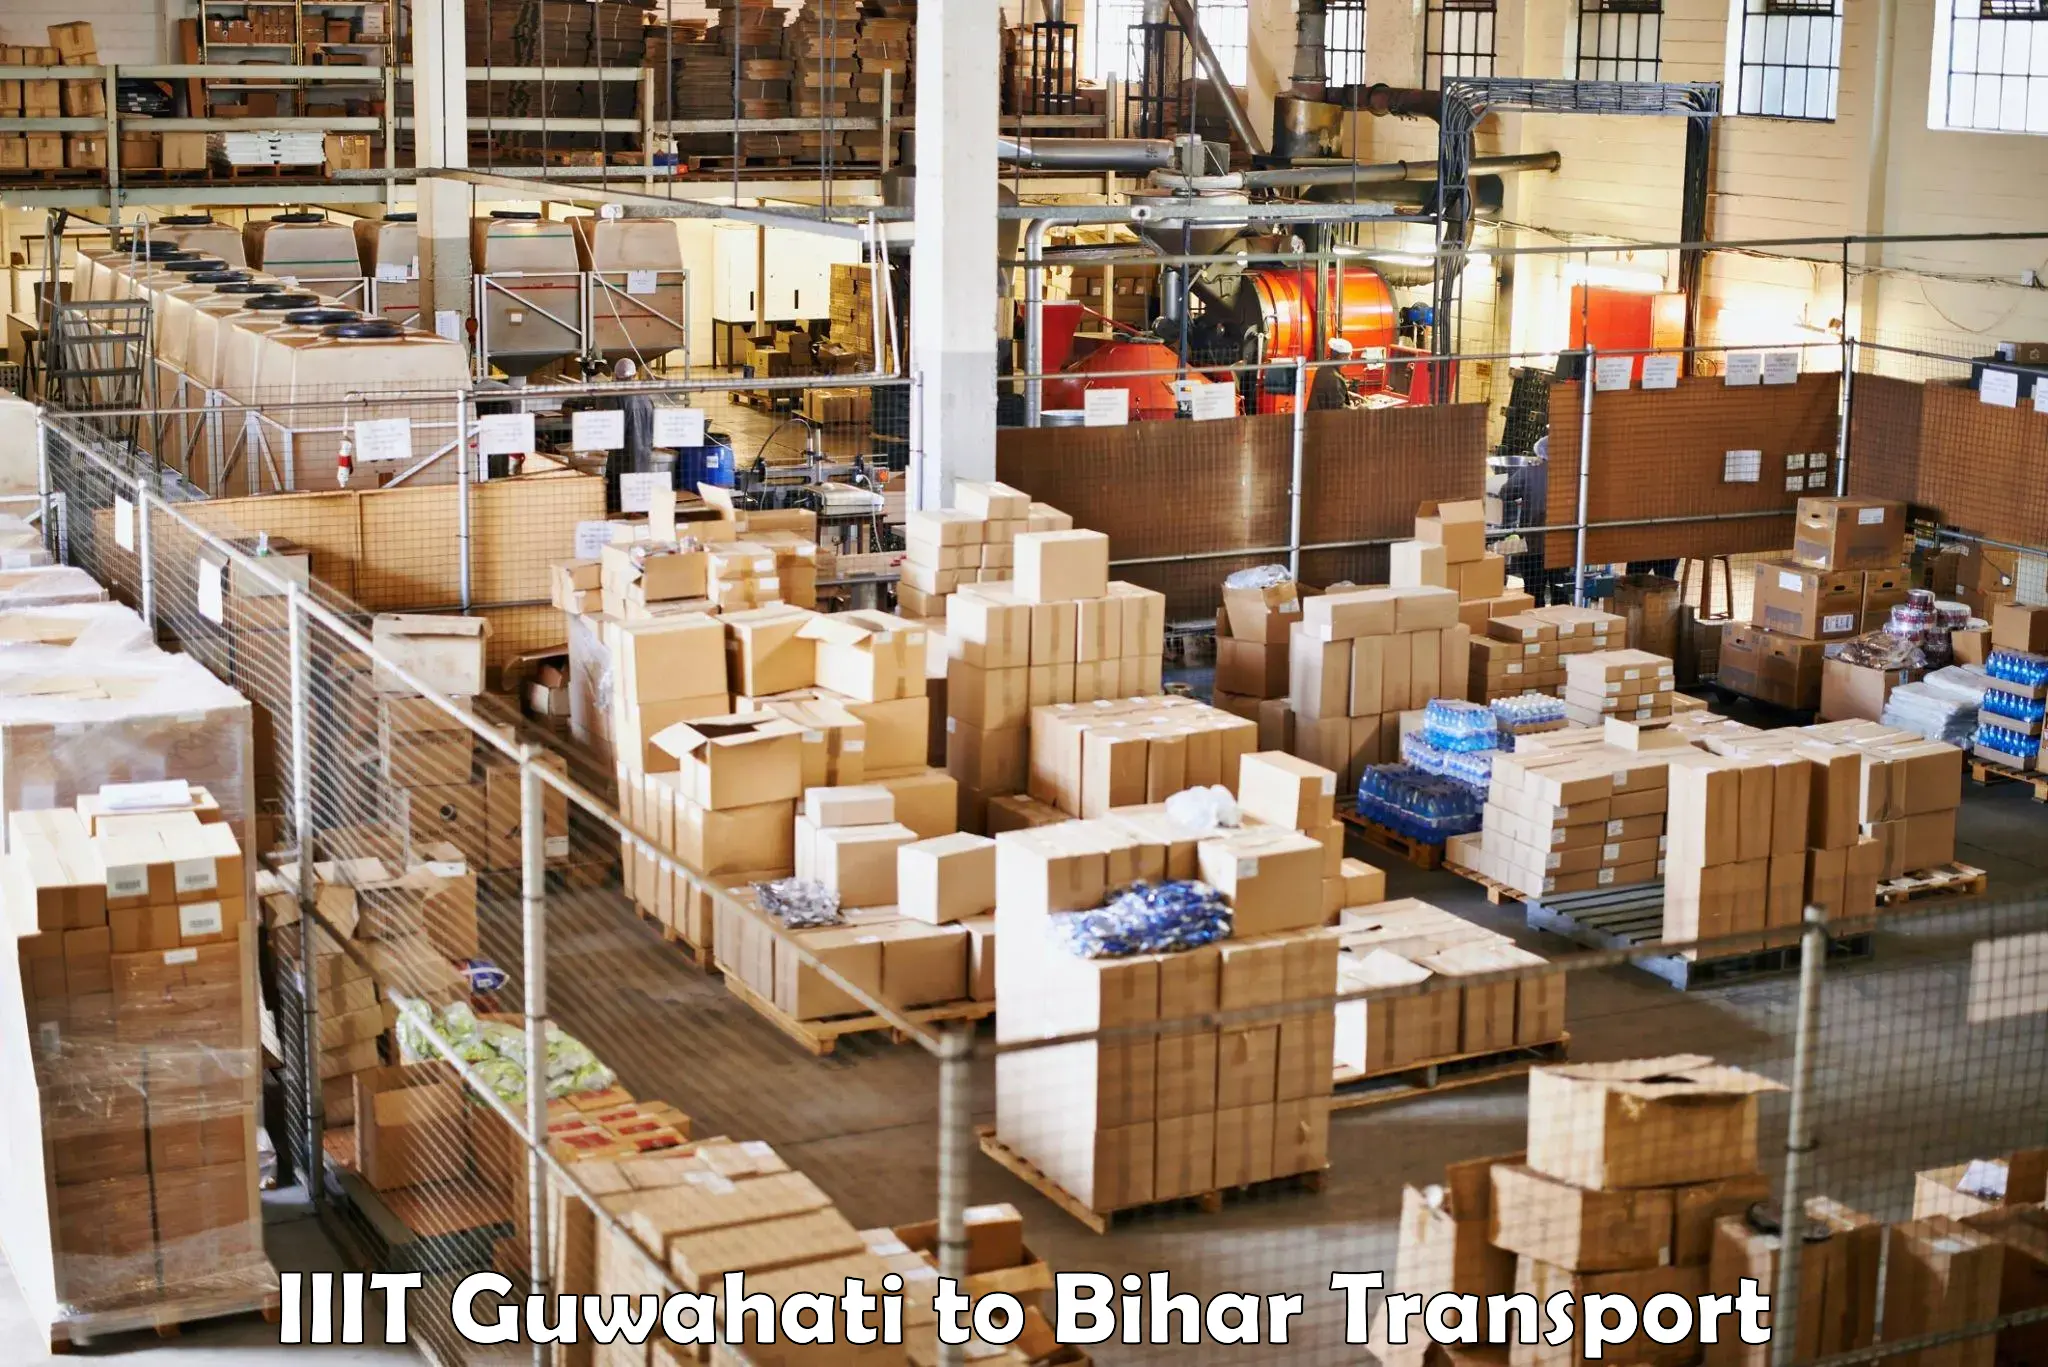 Shipping services IIIT Guwahati to Khodaganj